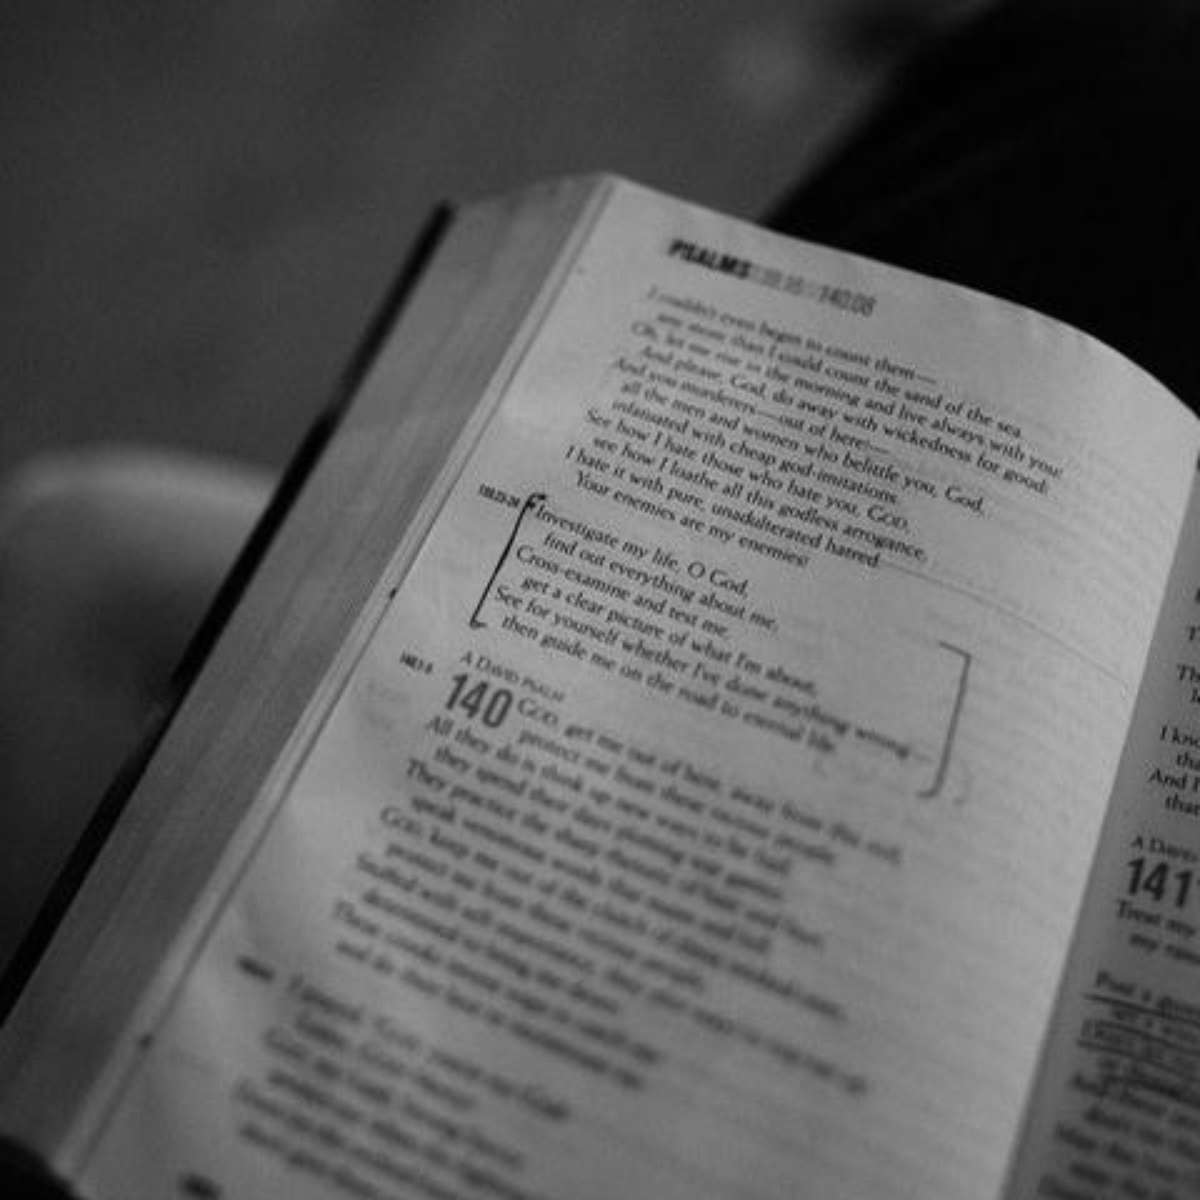 Salmo 91 - Salmo do dia - Salmo 4 completo Para sempre lembrar de